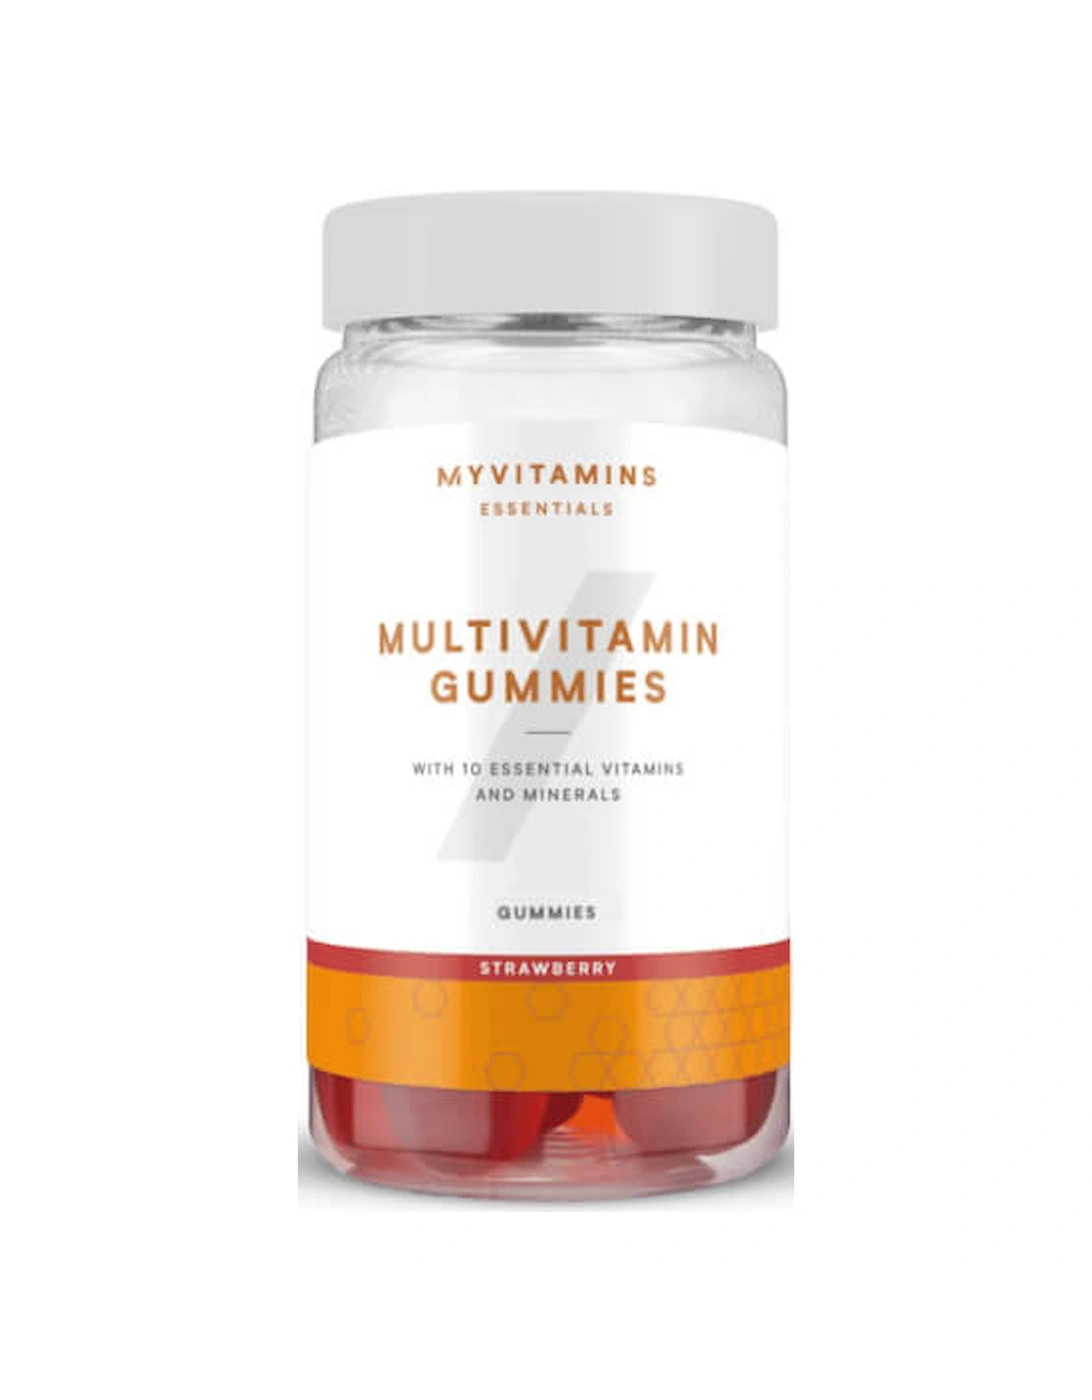 Multivitamin Gummies, Strawberry, 60 Gummies - Myvitamins, 2 of 1